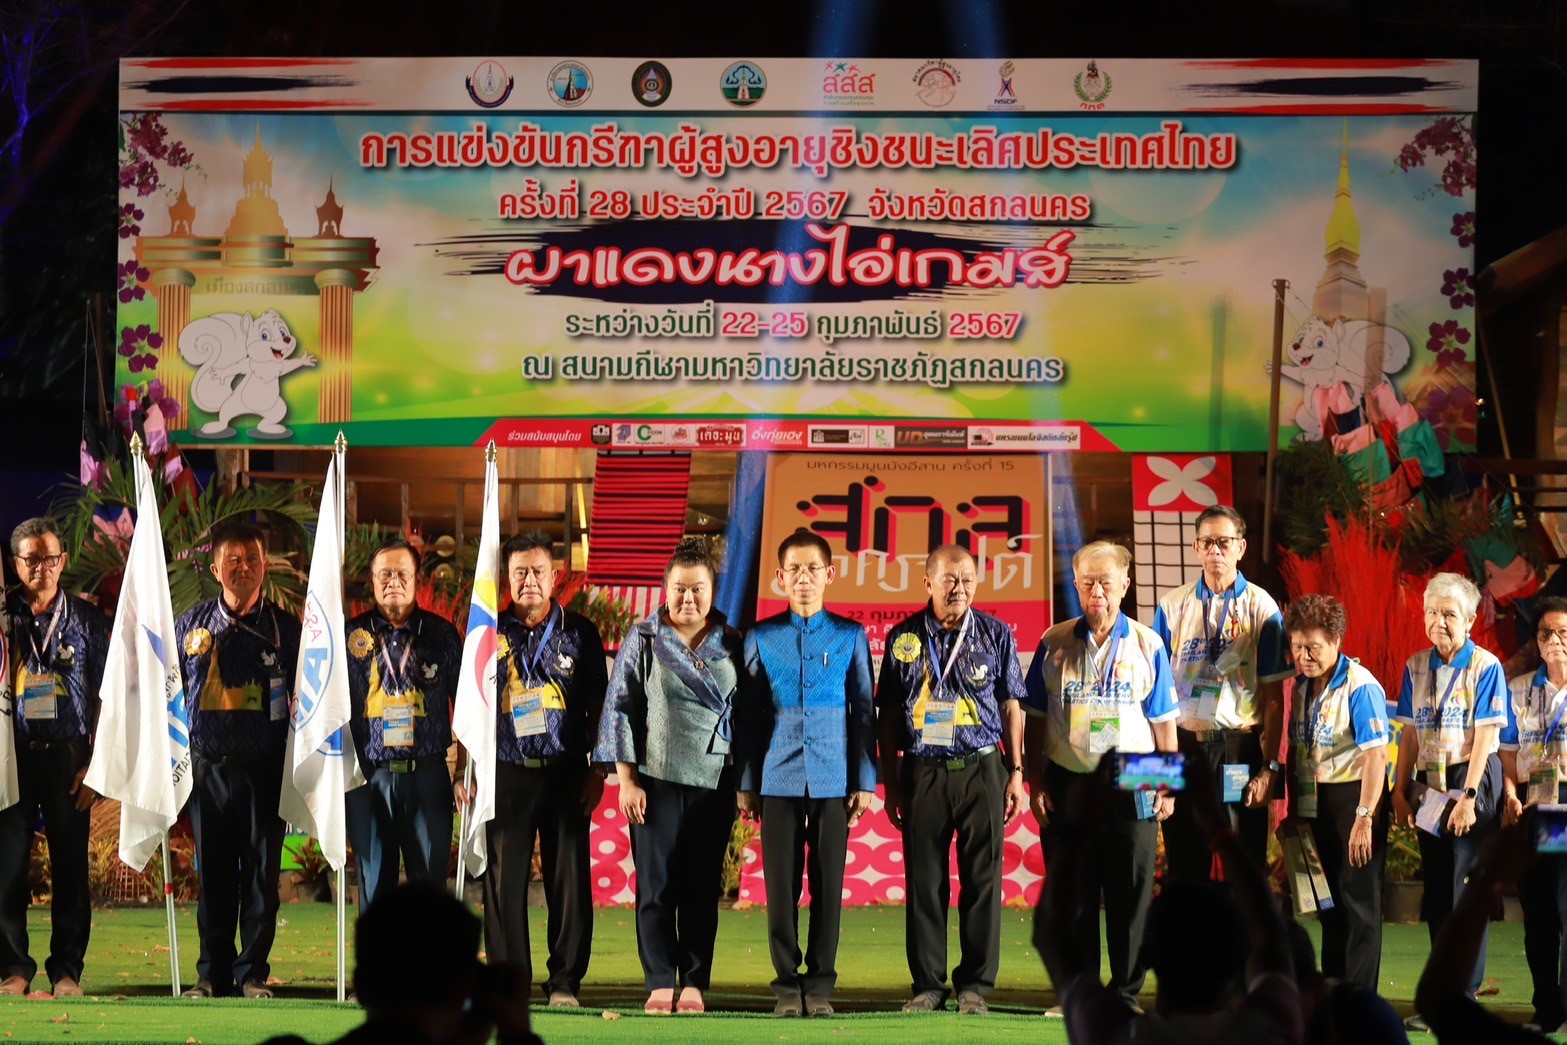 จ.สกลนคร เป็นเจ้าภาพจัดการแข่งขันกรีฑาผู้สูงอายุชิงชนะเลิศประเทศไทย ครั้งที่ 28  